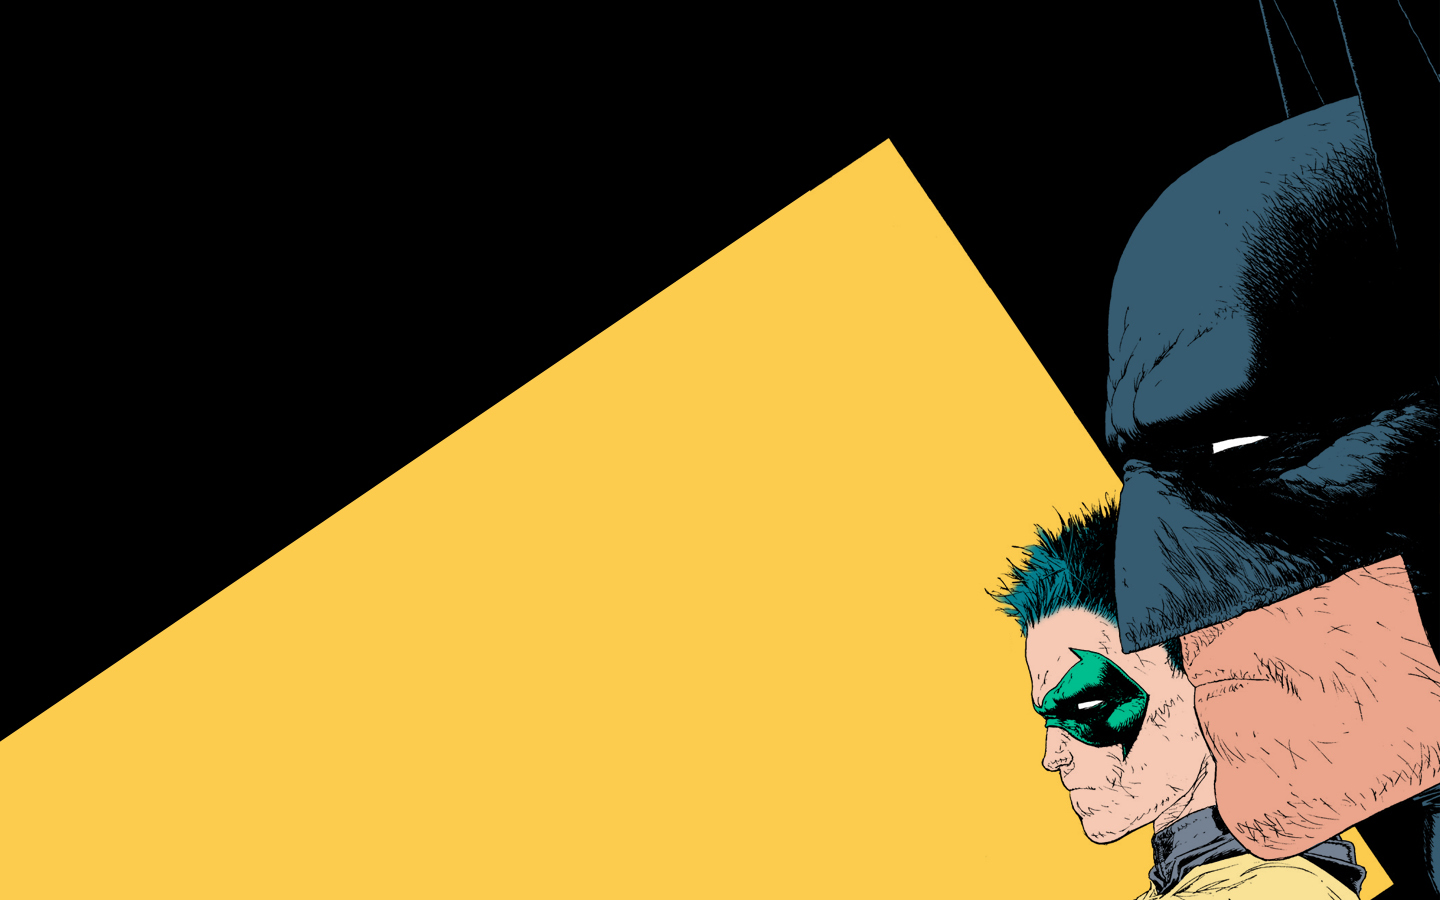 Dc Comics Batman And Robin